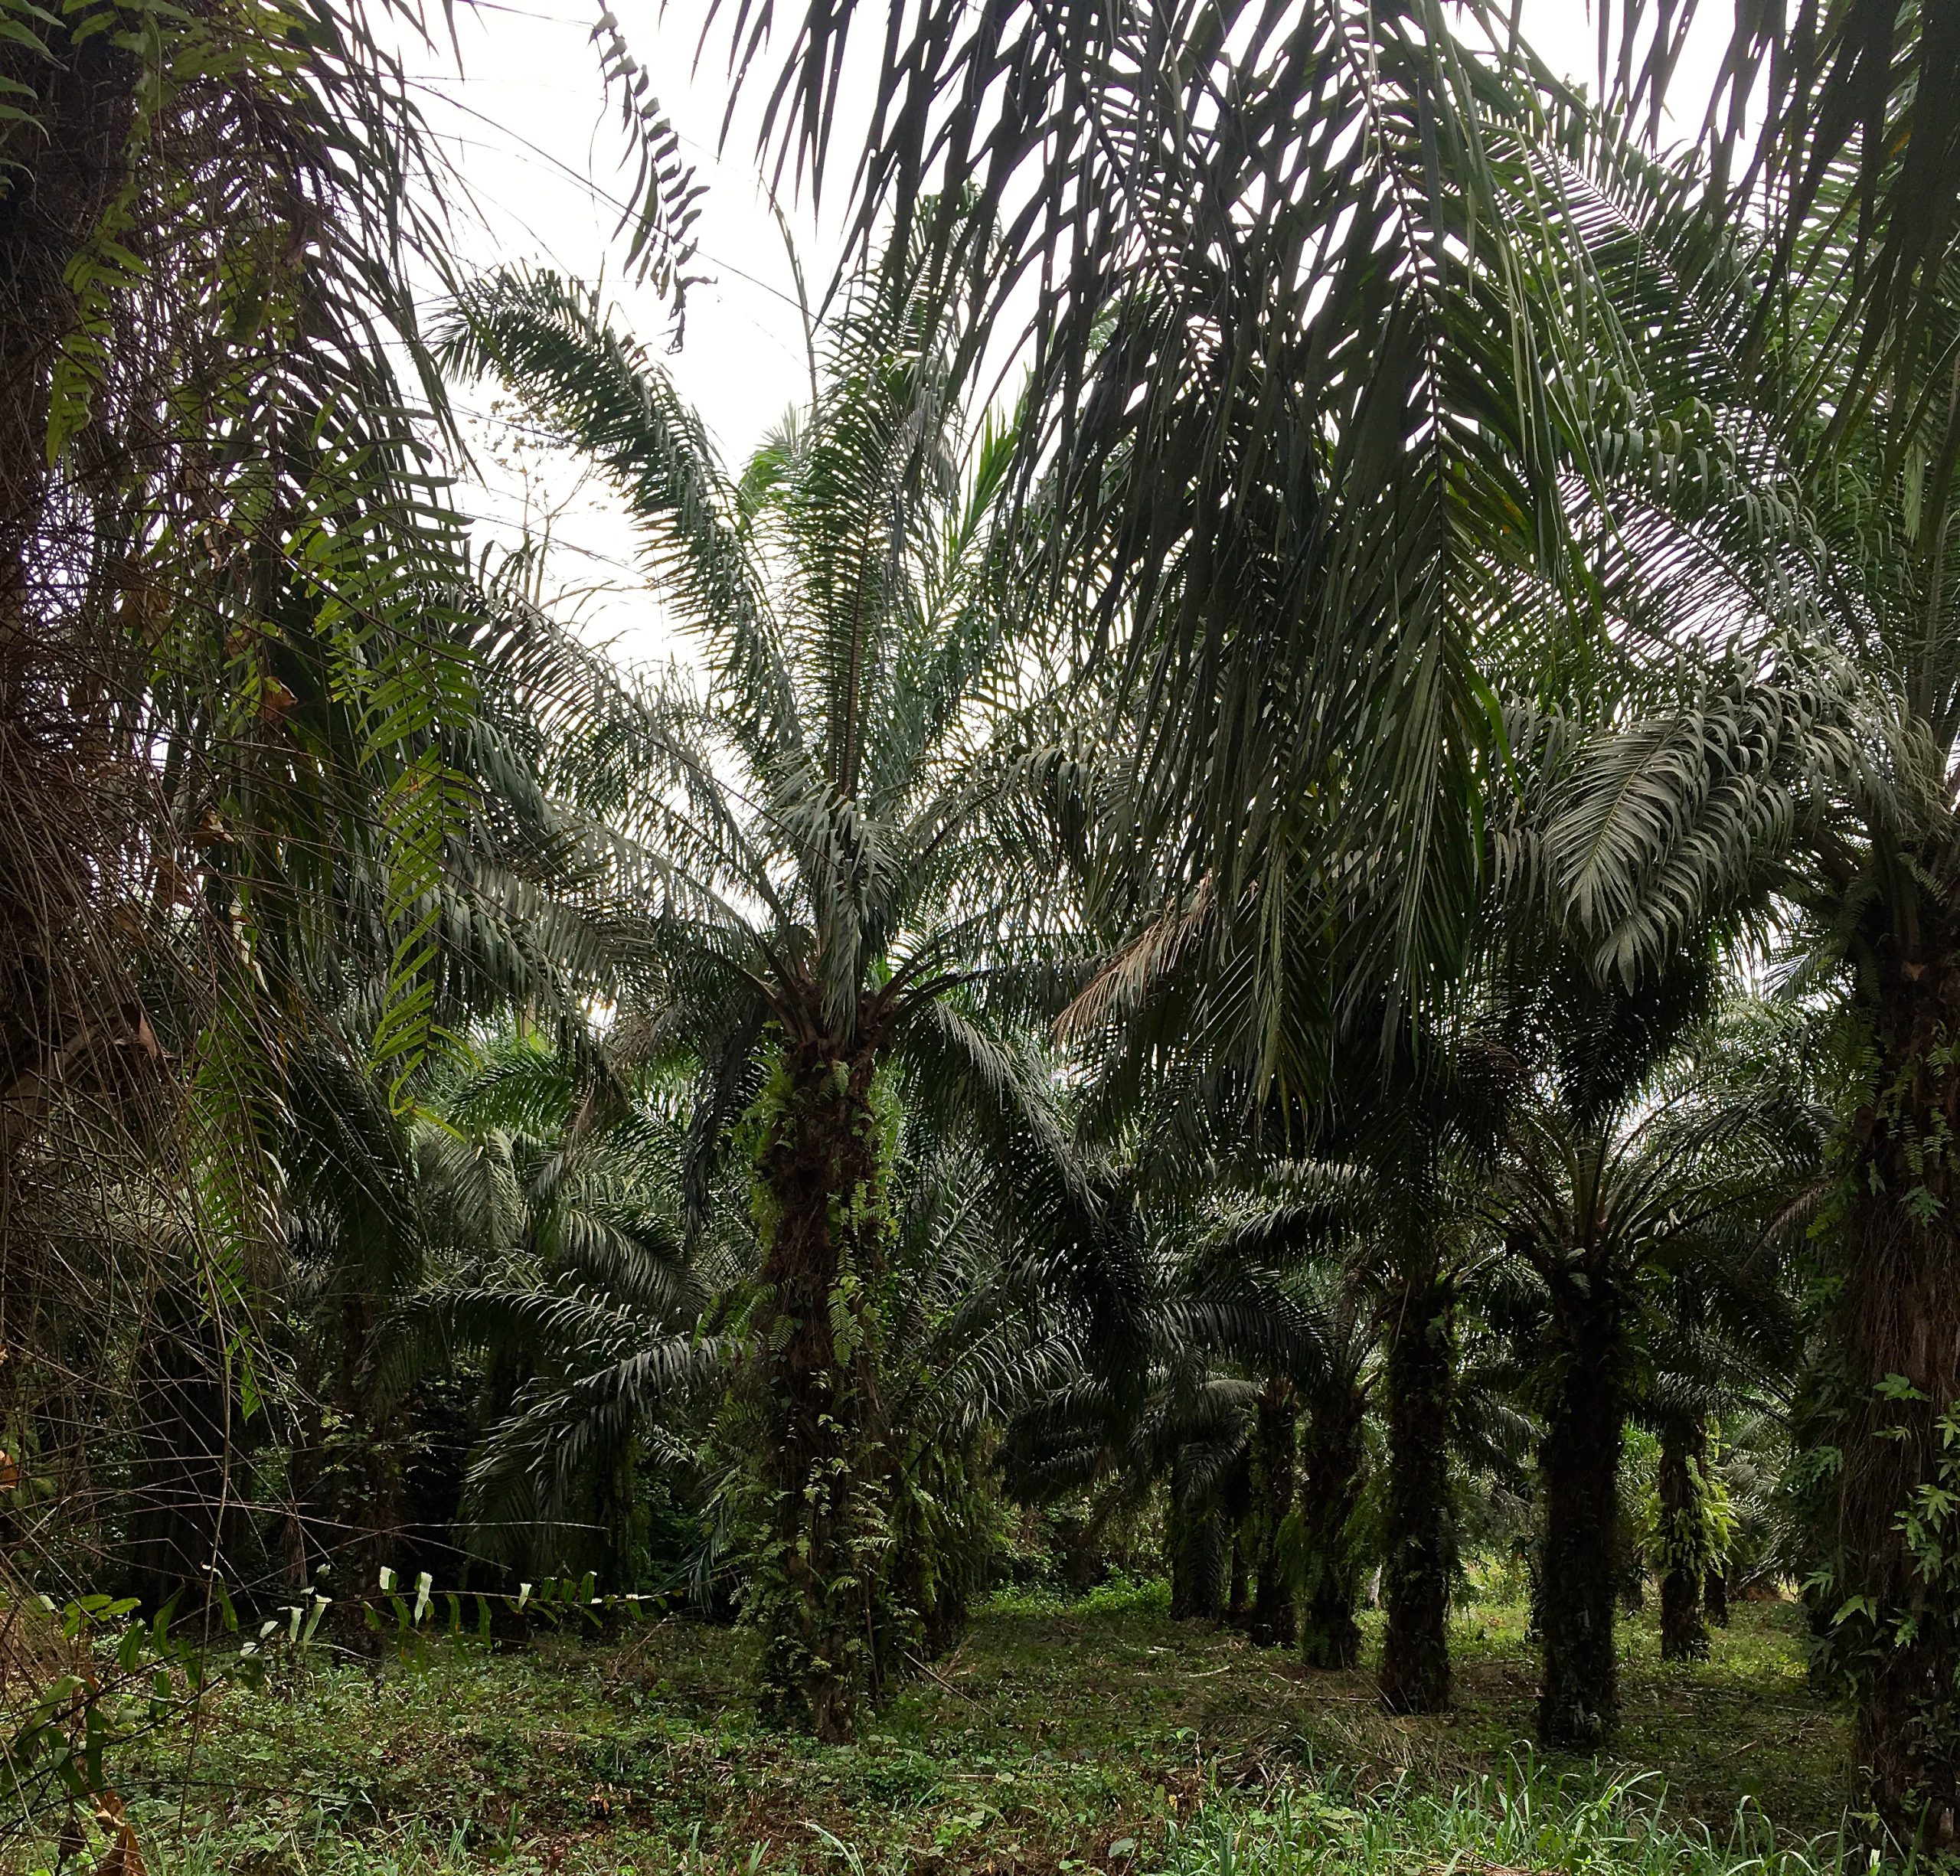  Le Ghana en passe de devenir le premier producteur d’huile de palme en Afrique de l’Ouest